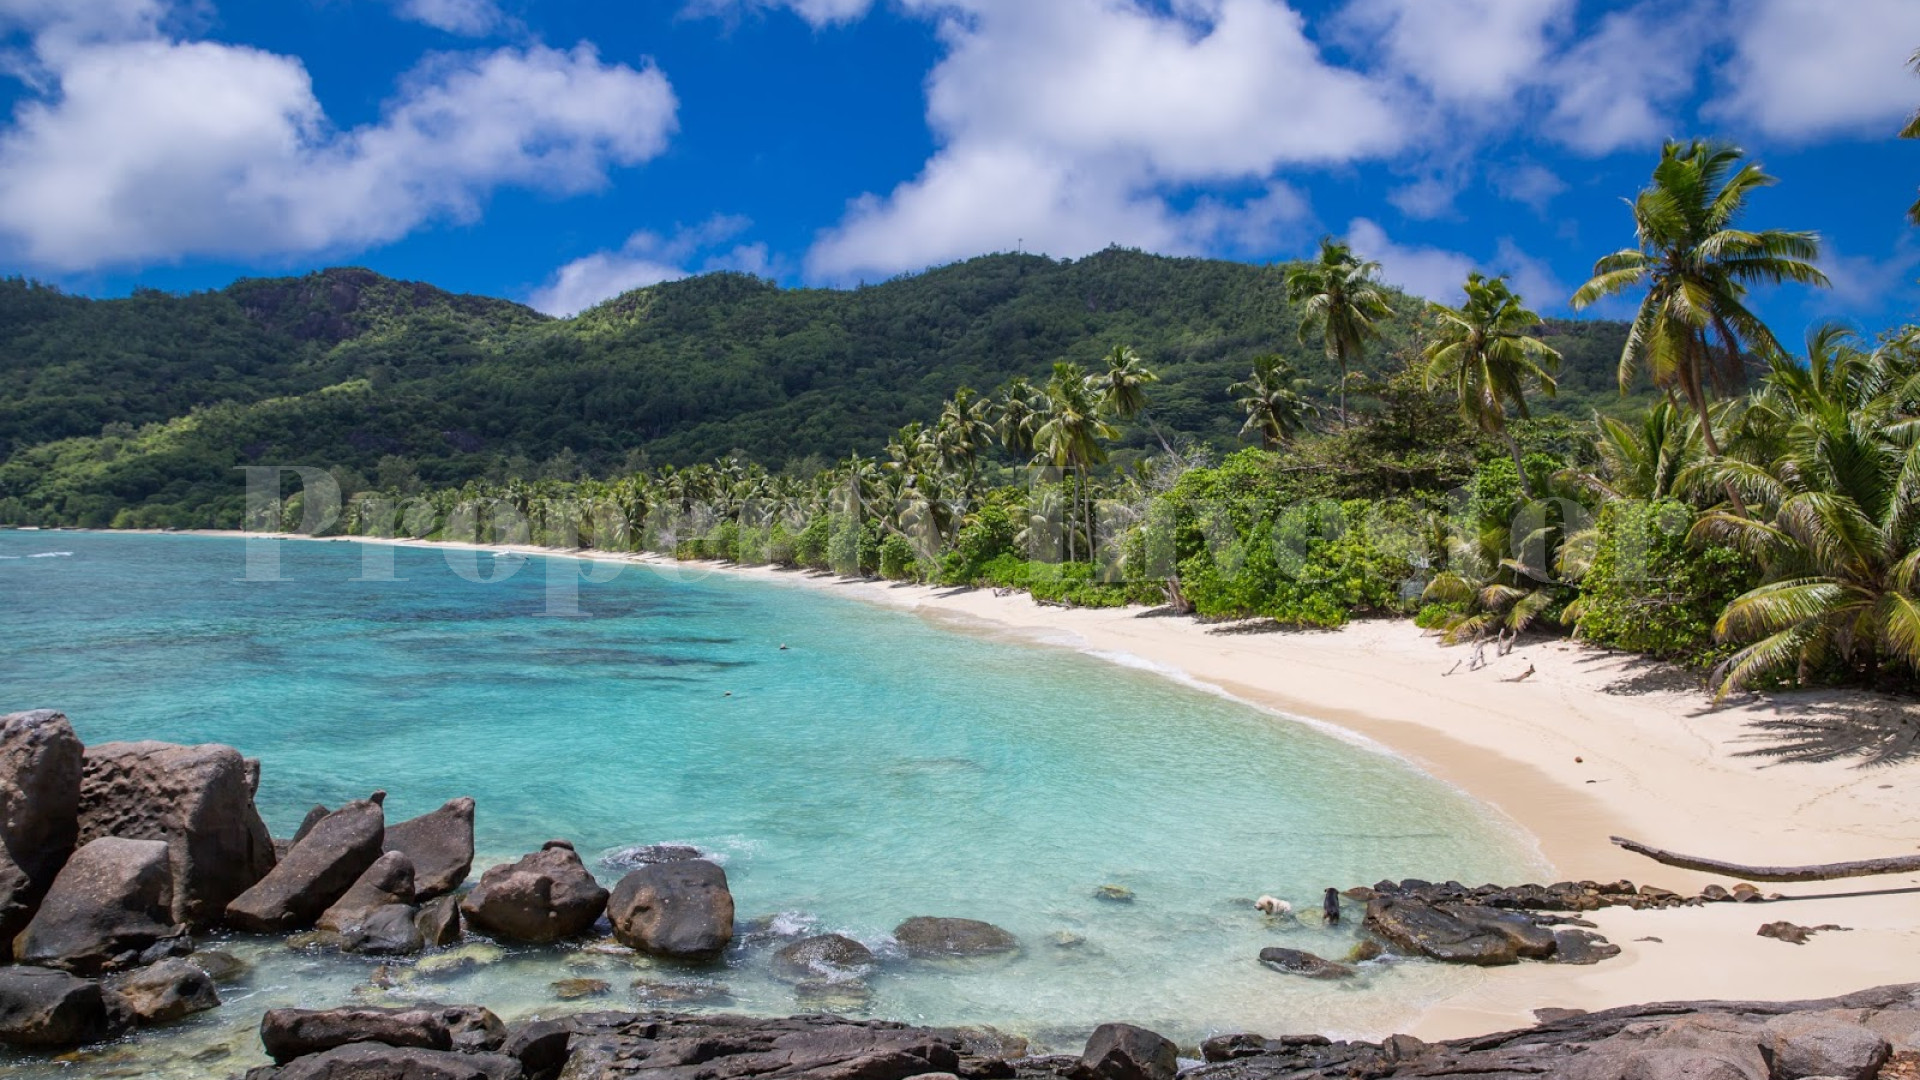 Продается участок земли 2,4 га с панорамным видом на море на Сейшелах